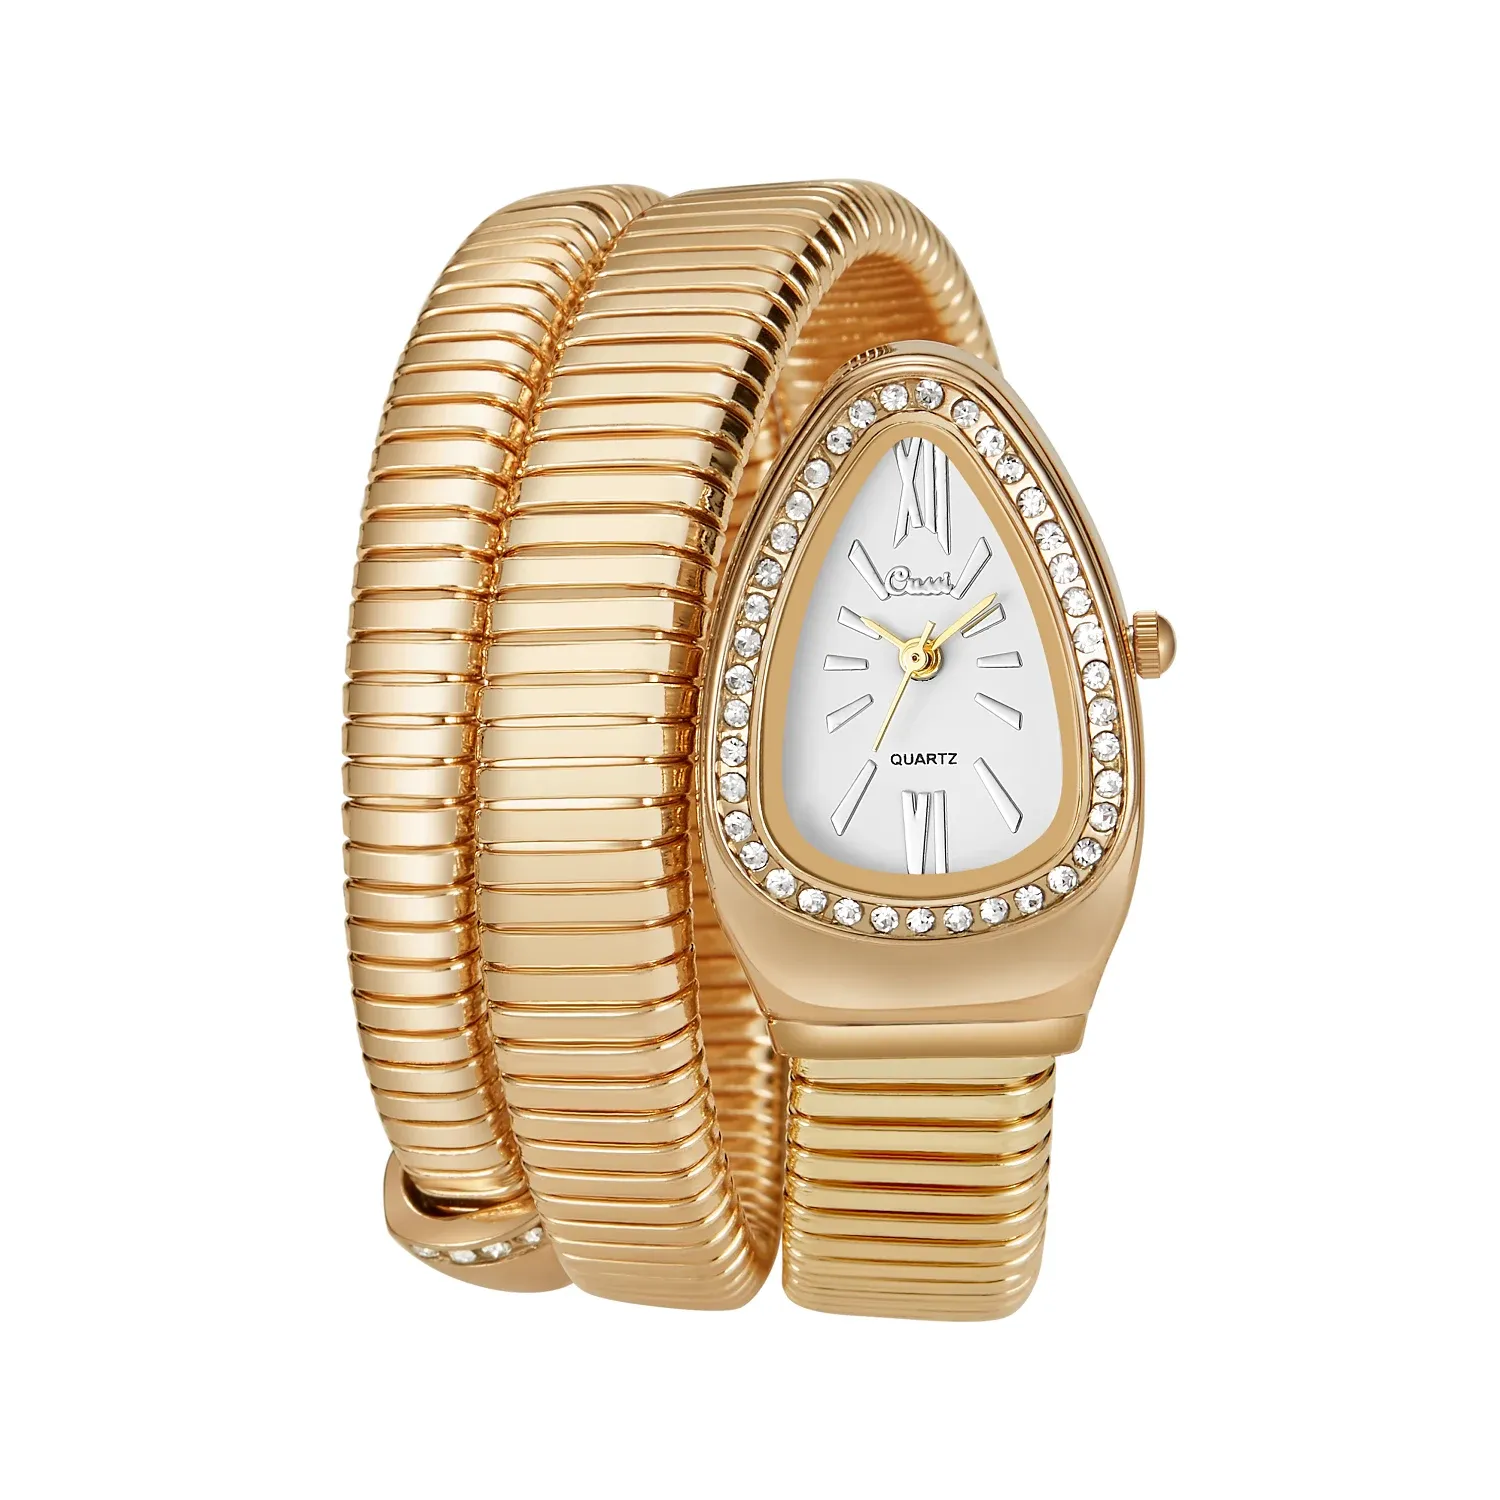 Yeni kadın marka yılan kuvars bayanlar altın izleme elmas kol saati kadın moda bilezik saatler saat reloj mujer